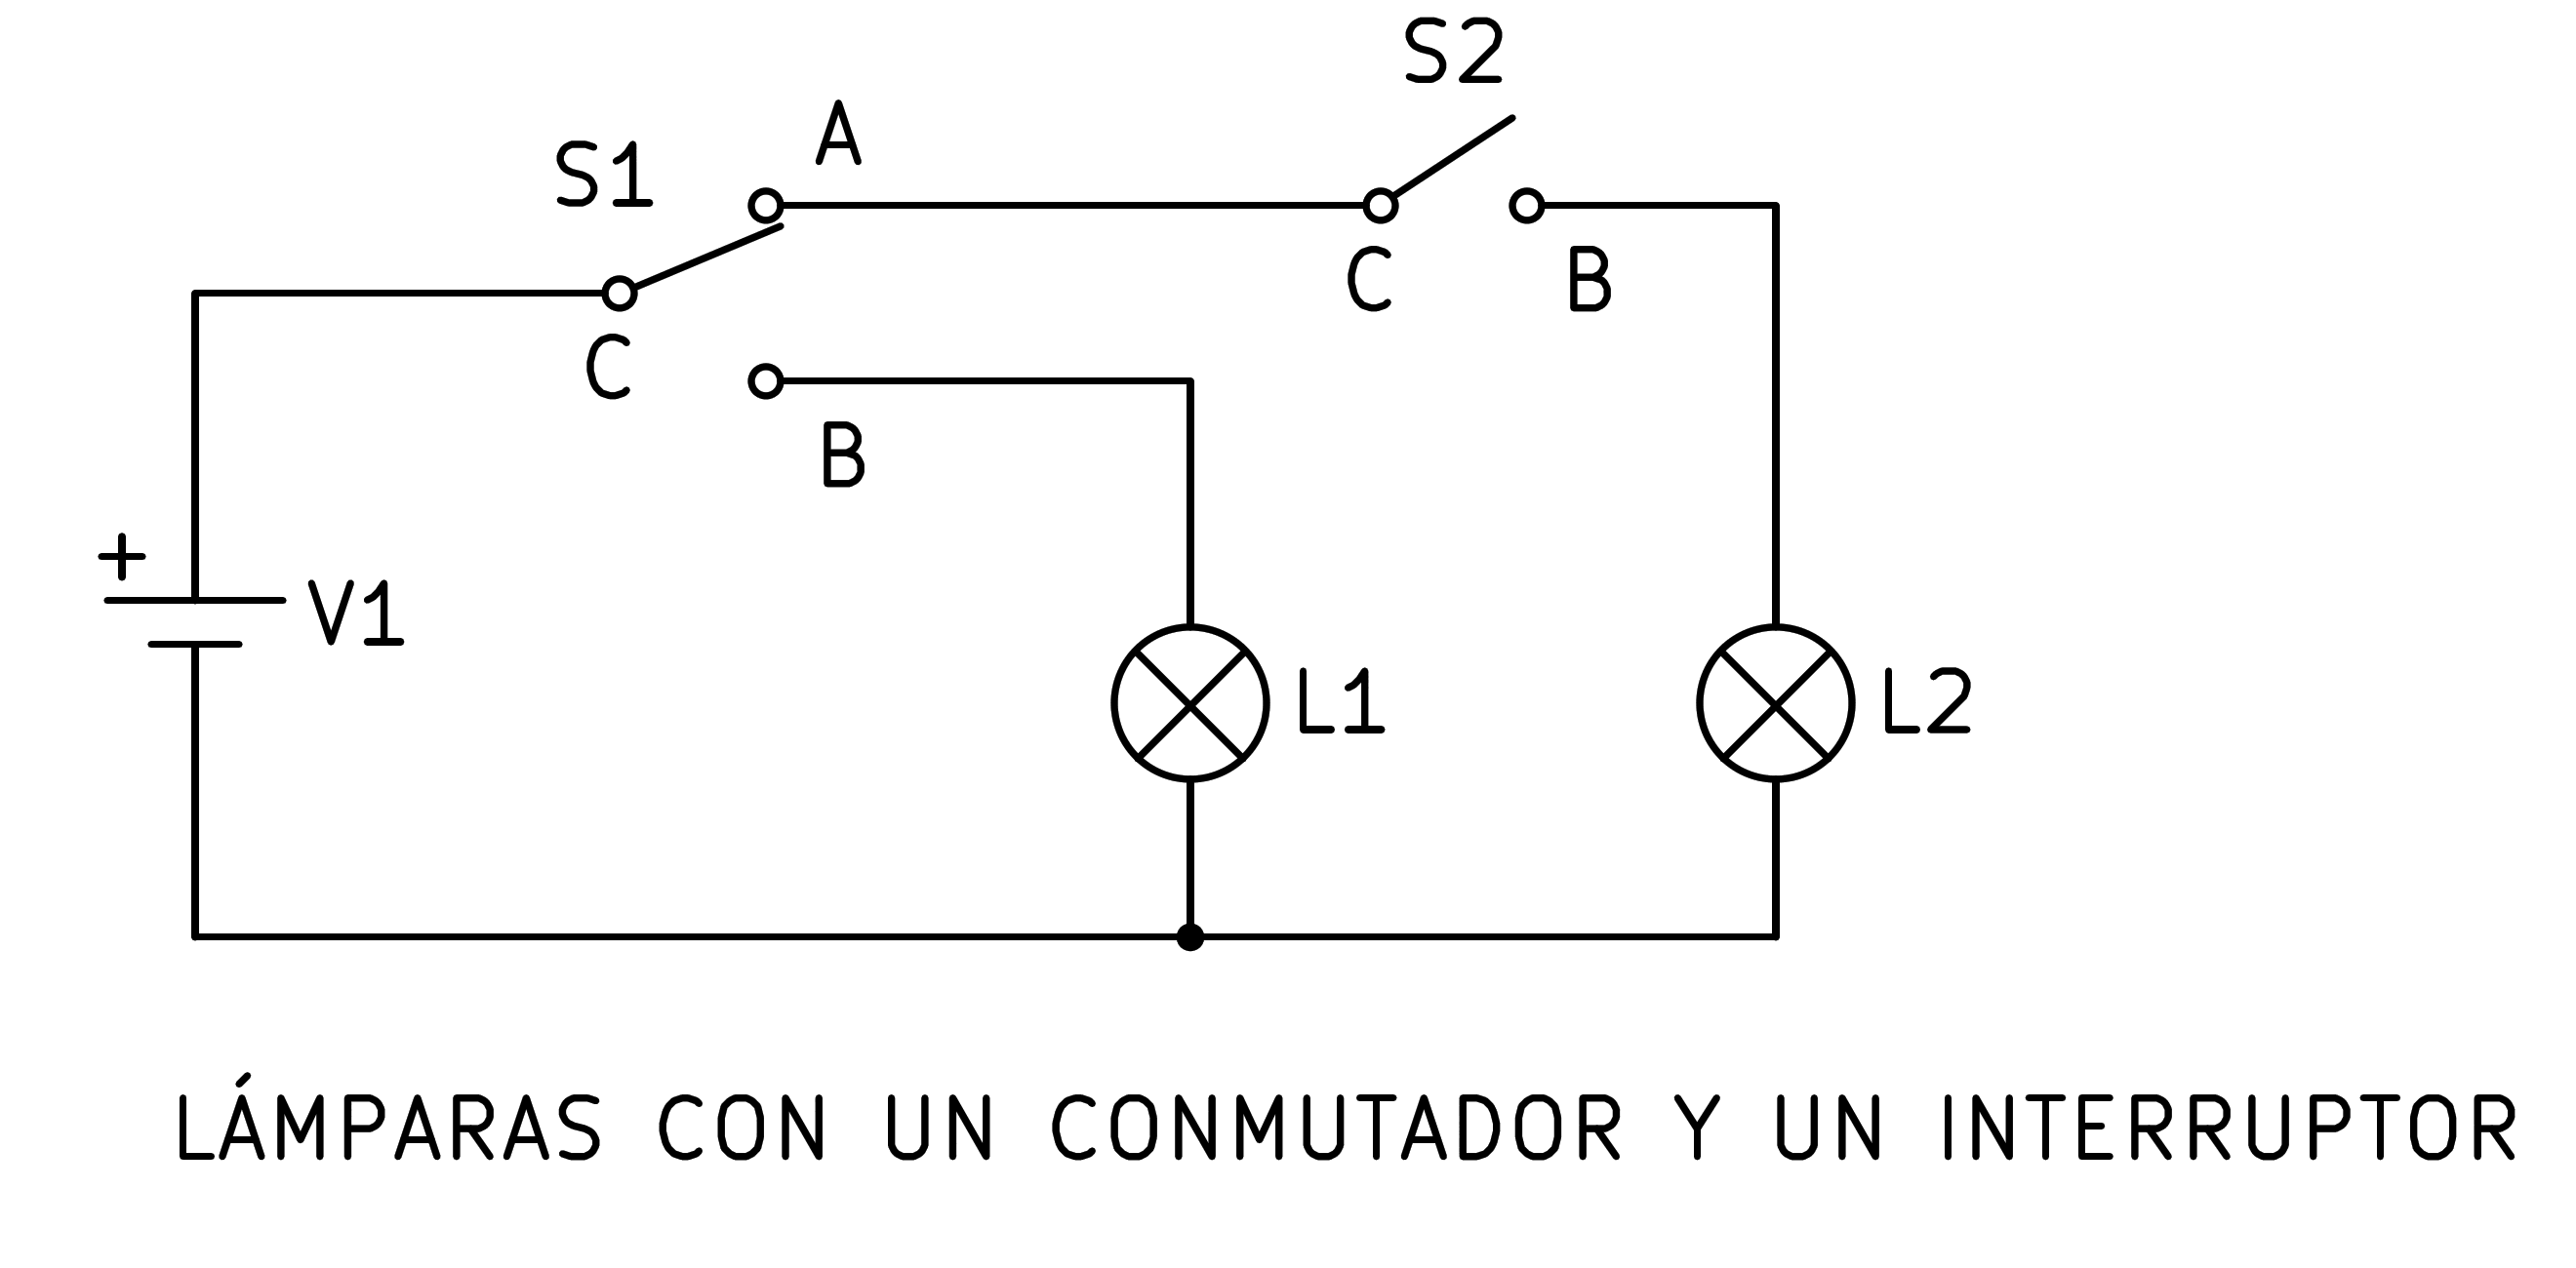 _images/electric-bornas-conmutador-interruptor.png